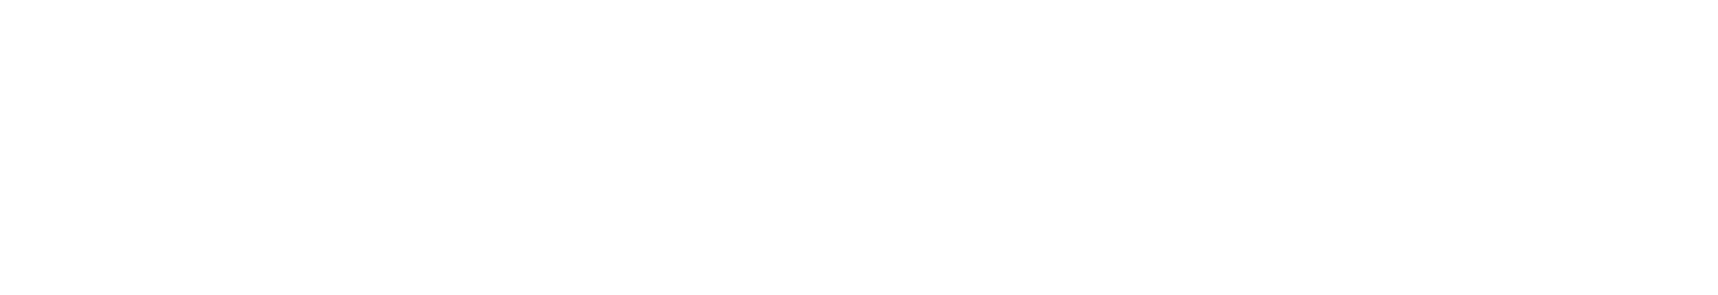 A Fővárosi Vízművek Zrt. Vízplusz Pro logója látható a képen.